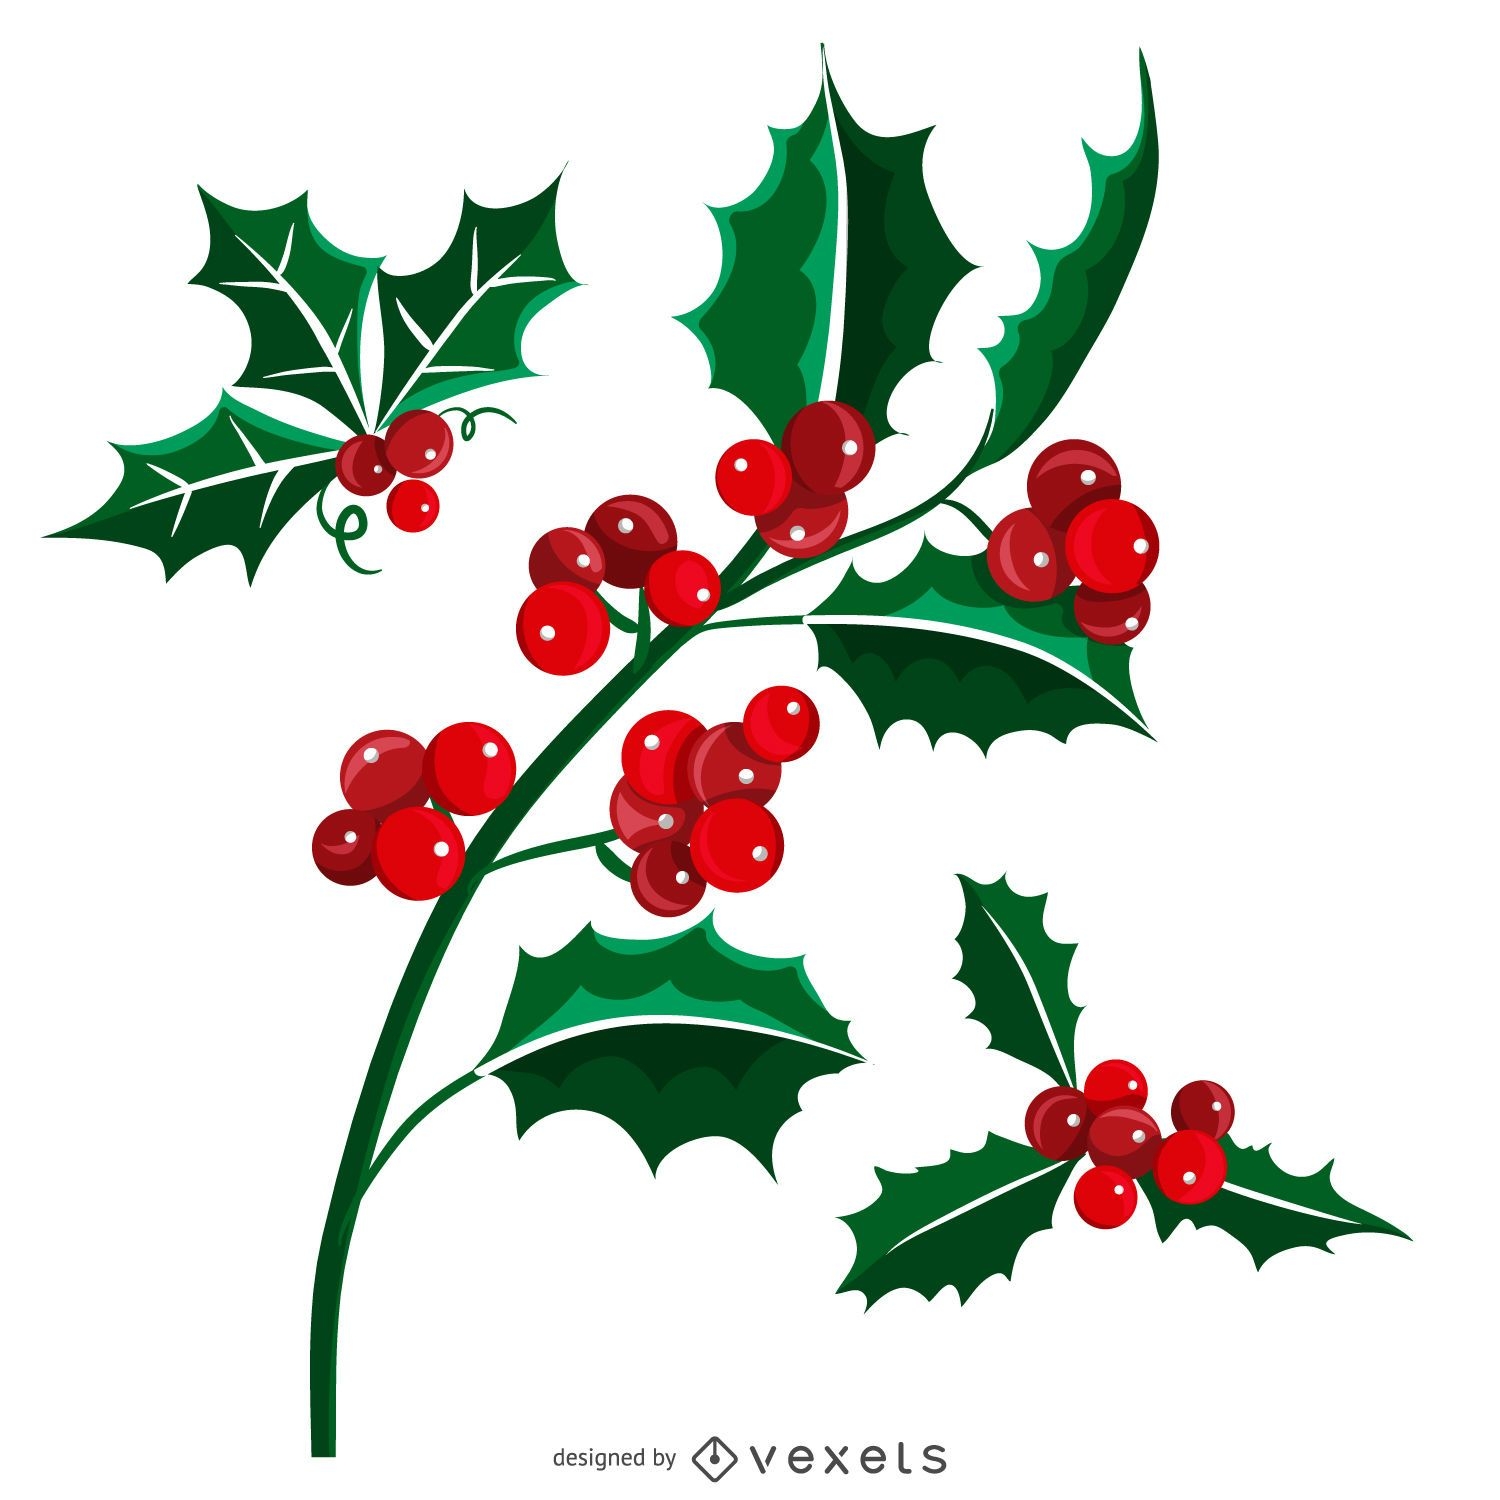 Illustrated Christmas mistletoe set